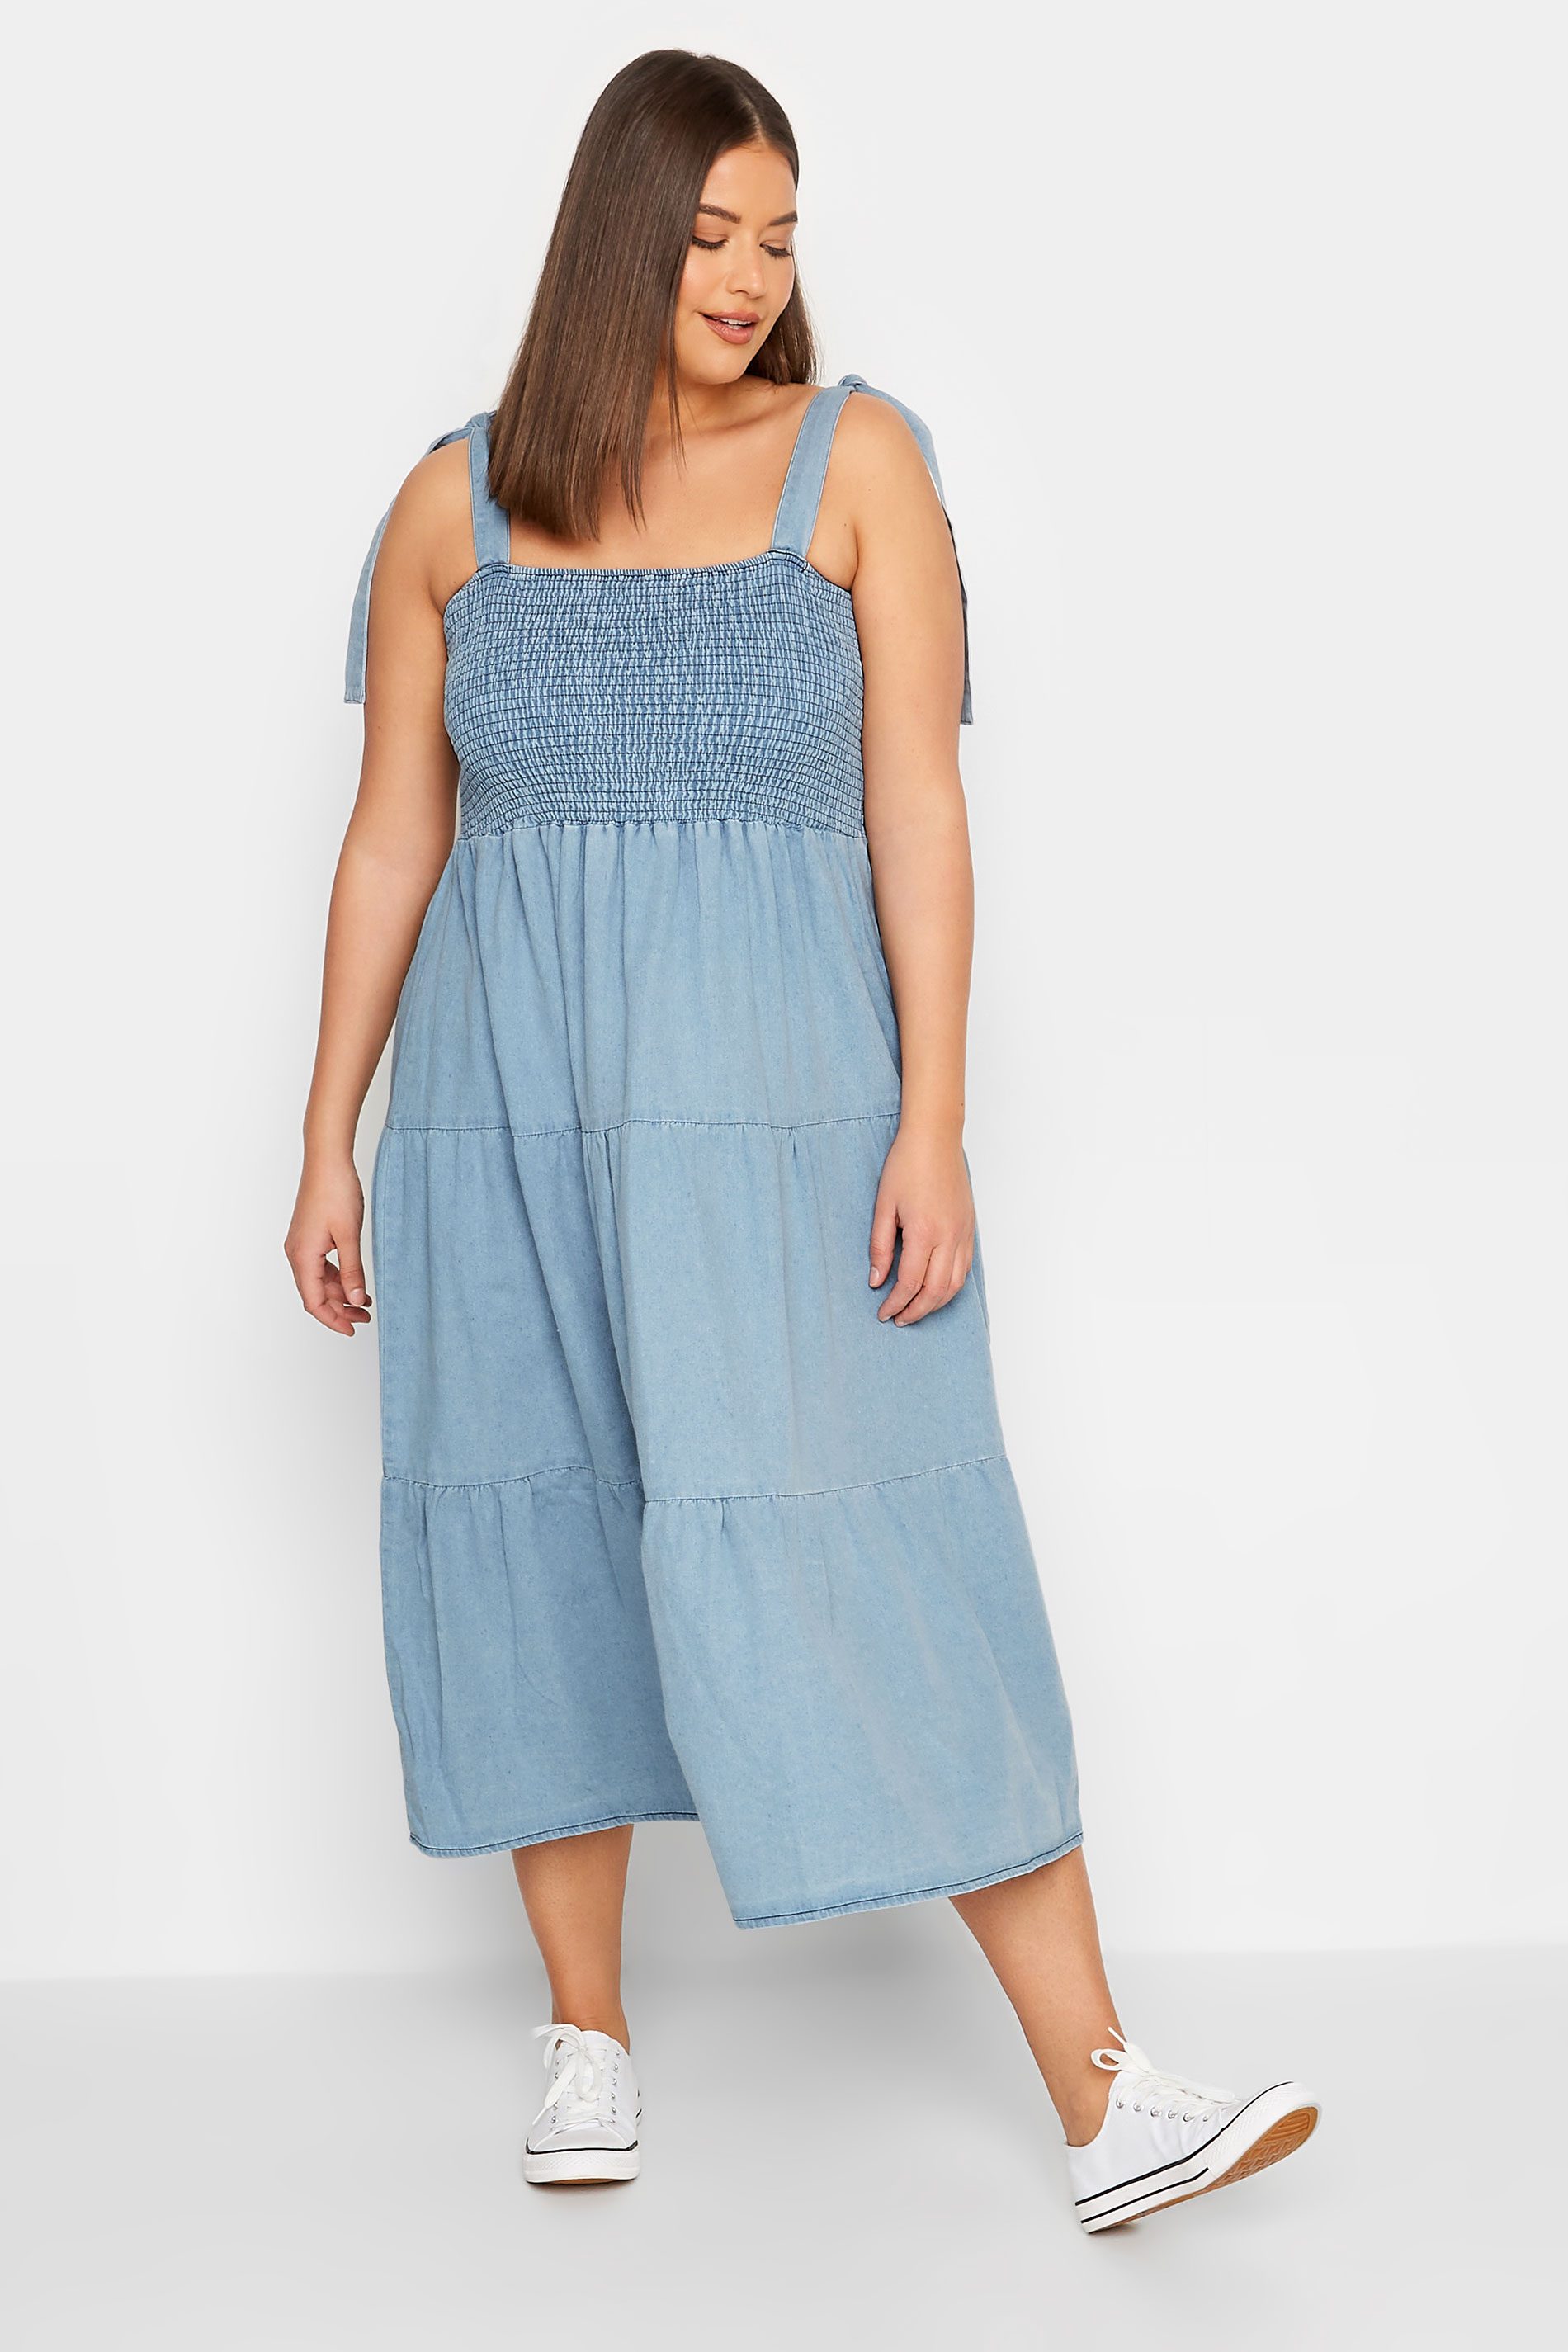 LTS Tall Women's Blue Denim Shirred Tiered Midi Dress | Long Tall Sally 2